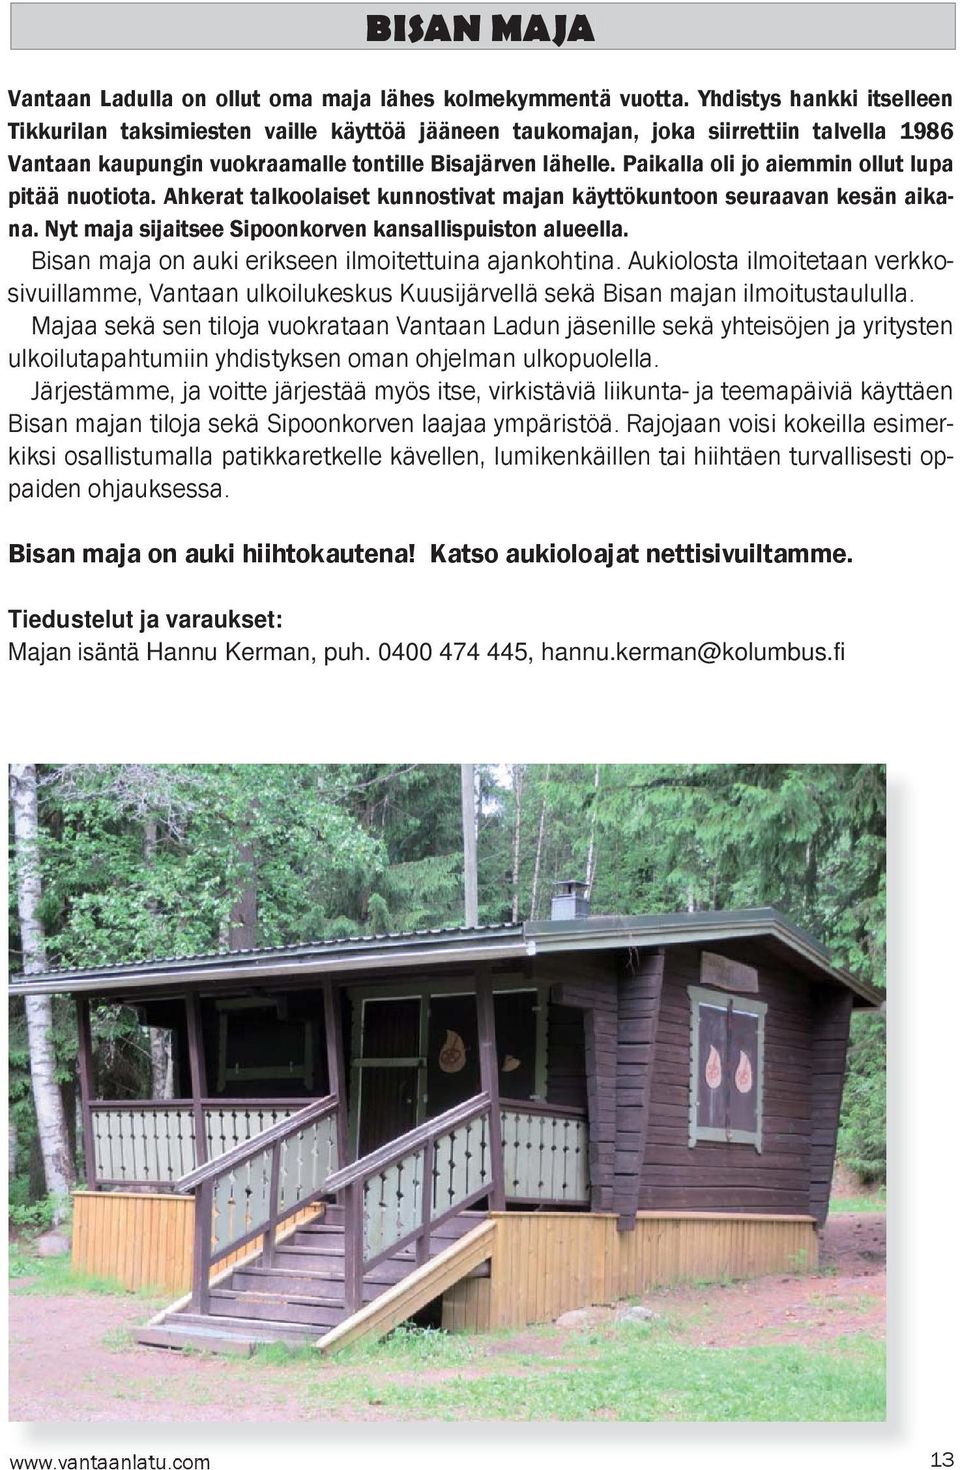 Paikalla oli jo aiemmin ollut lupa pitää nuotiota. Ahkerat talkoolaiset kunnostivat majan käyttökuntoon seuraavan kesän aikana. Nyt maja sijaitsee Sipoonkorven kansallispuiston alueella.